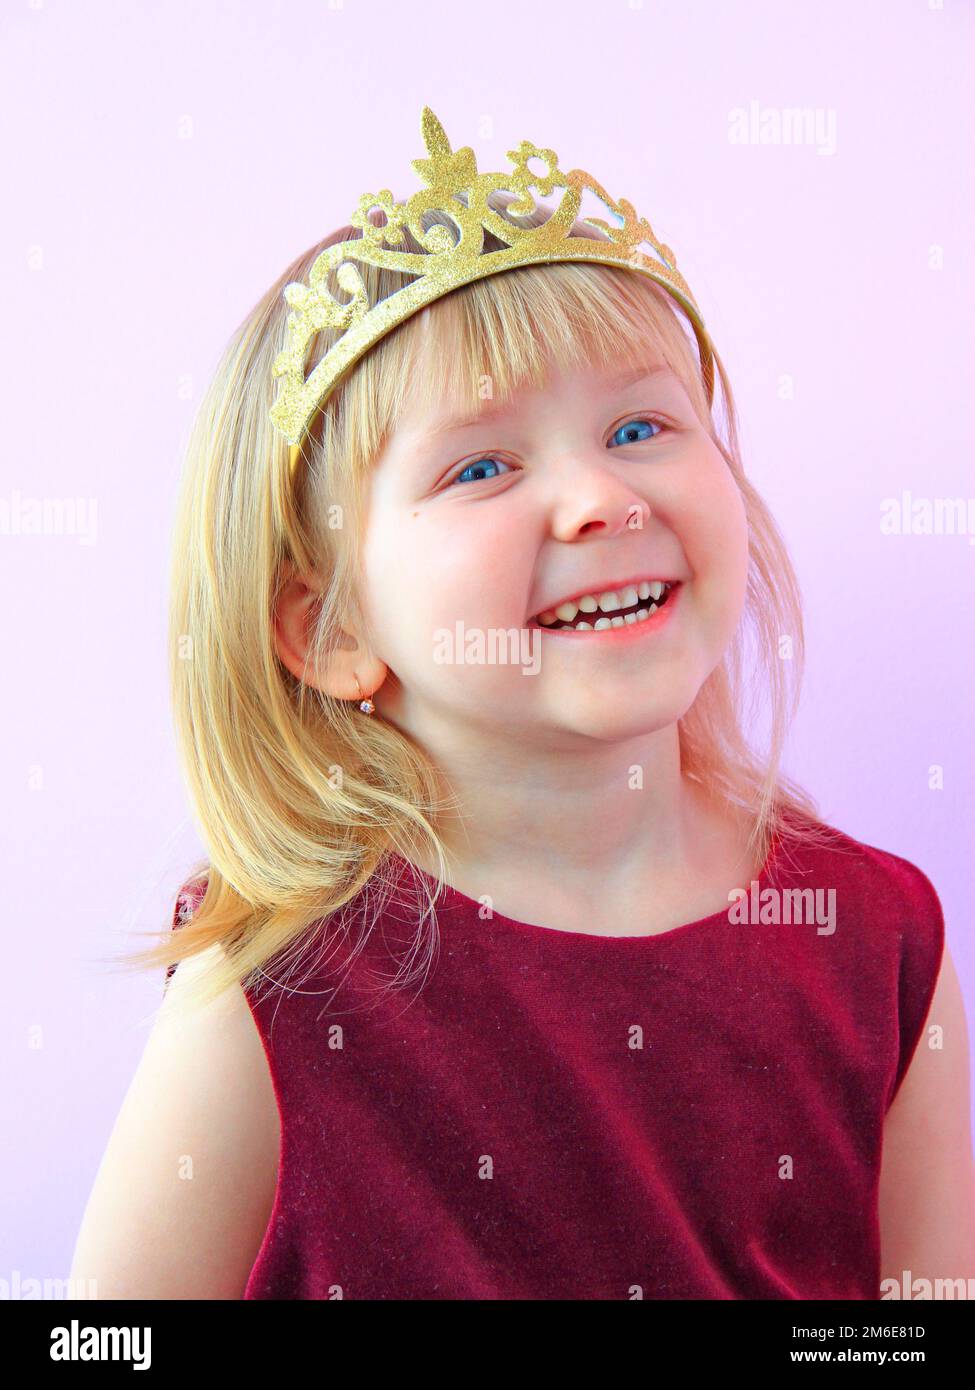 Ein kleines Mädchen mit einer lächelnden Krone auf dem Kopf. Ein Kind in einem schönen Kleid, das lacht. Das kleine Mädchen lächelt Stockfoto